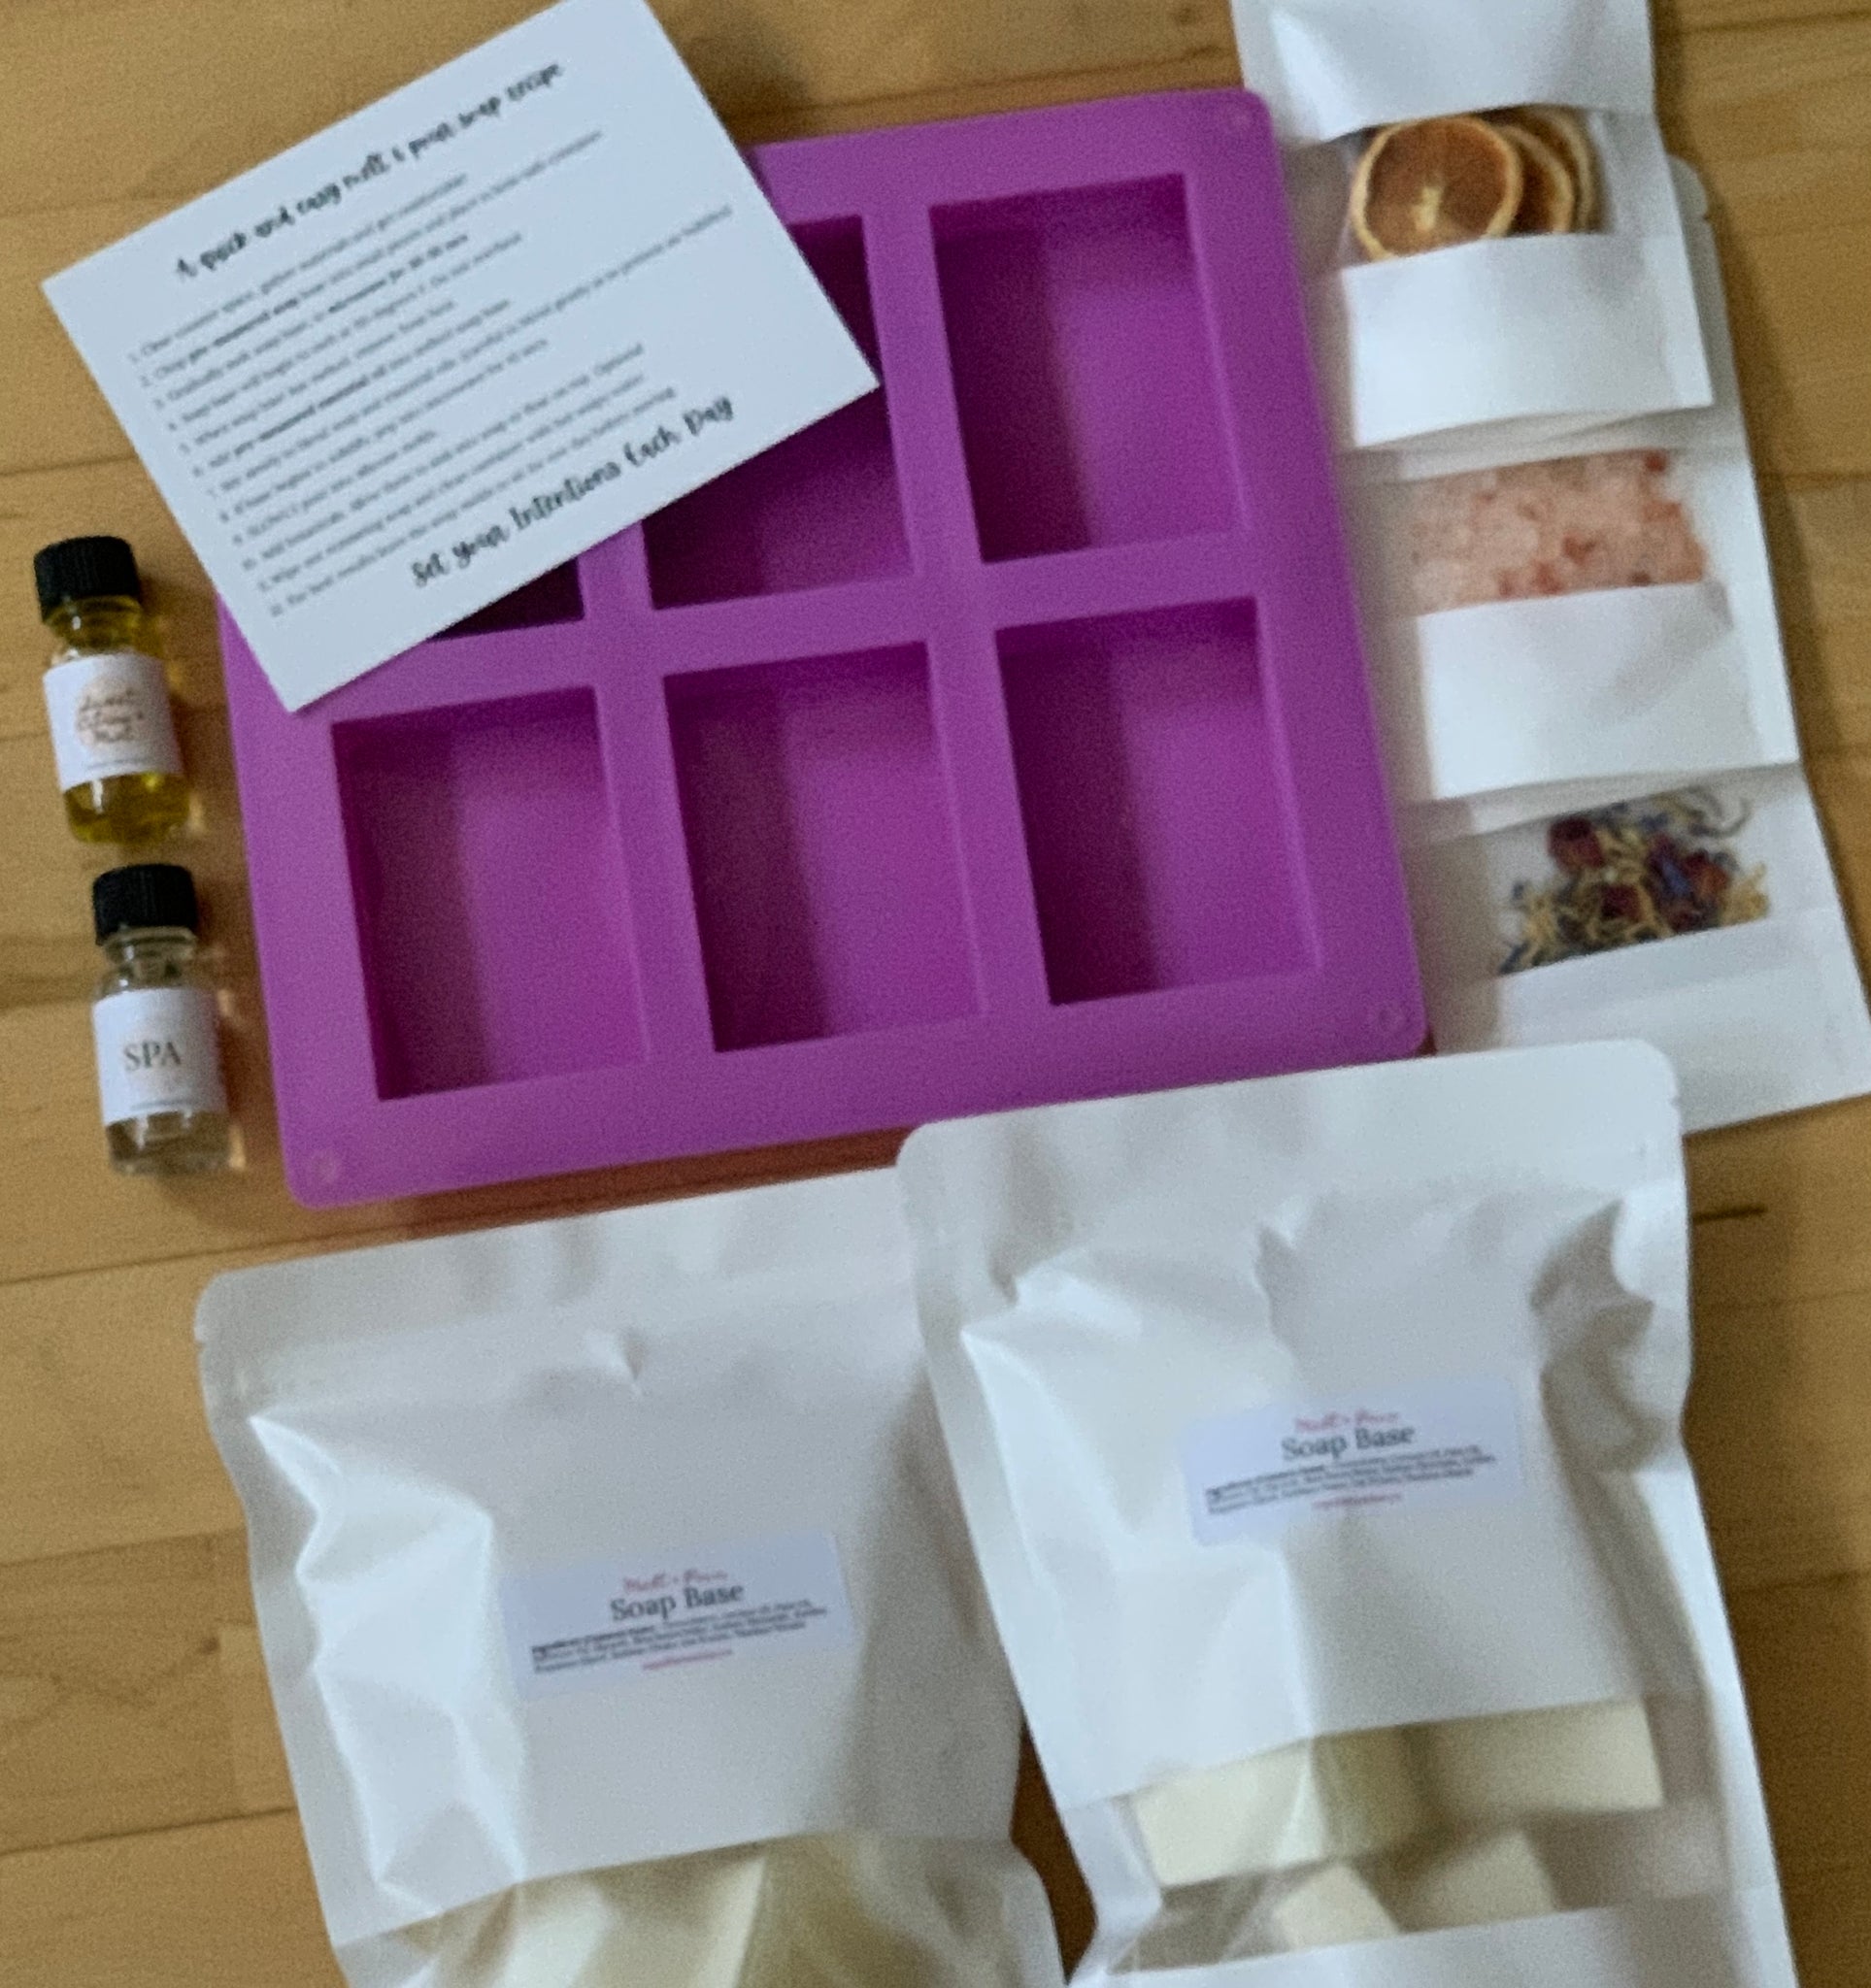 Melt & Pour Soap-Making Kit